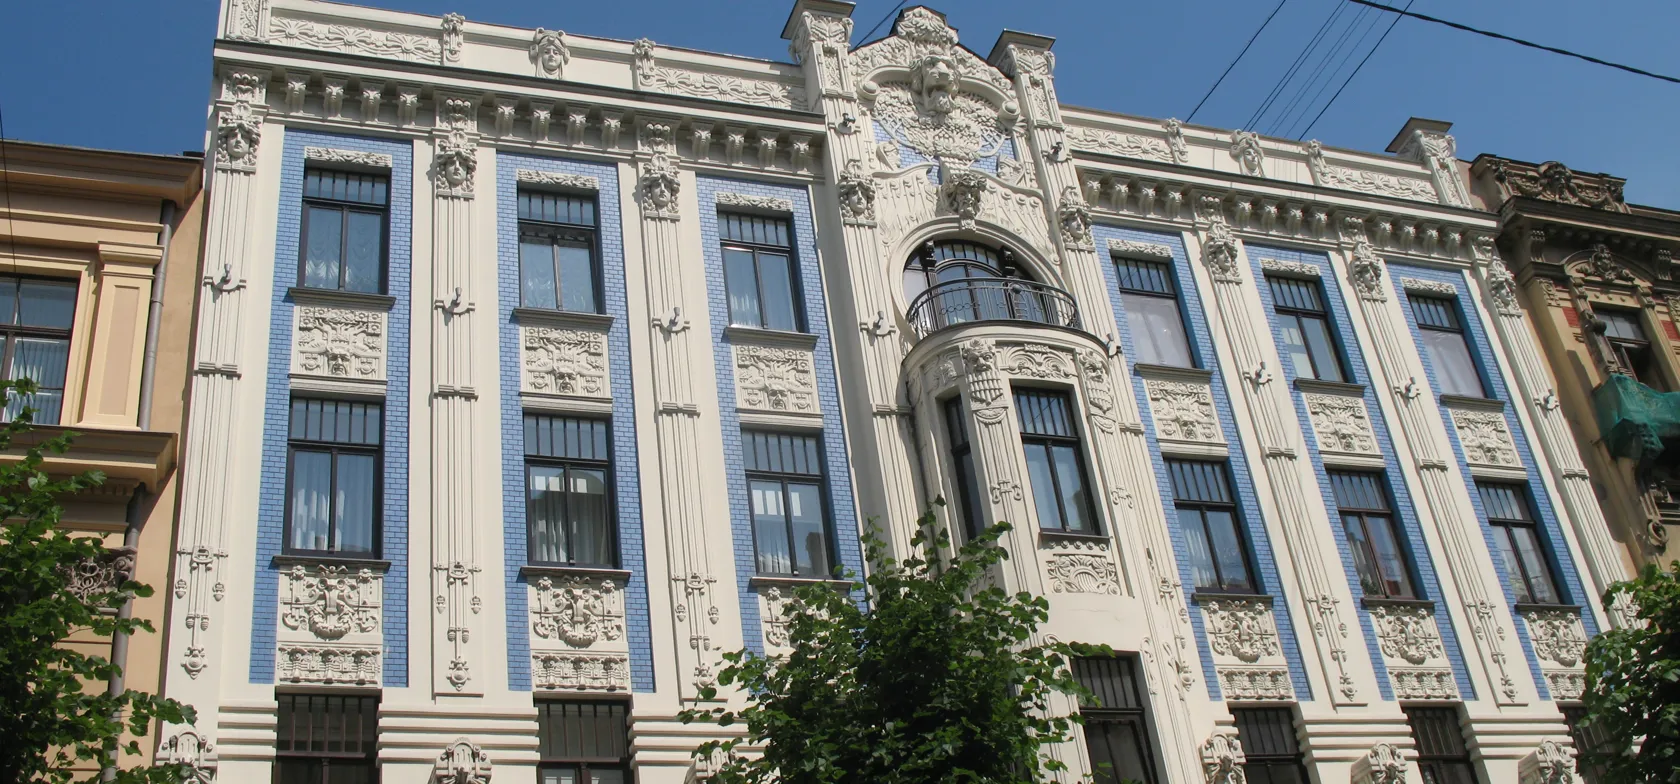 Riga har mange smukke art nouveau huse og inspirerende arkitektur. Foto Kirsten Gynther Holm 